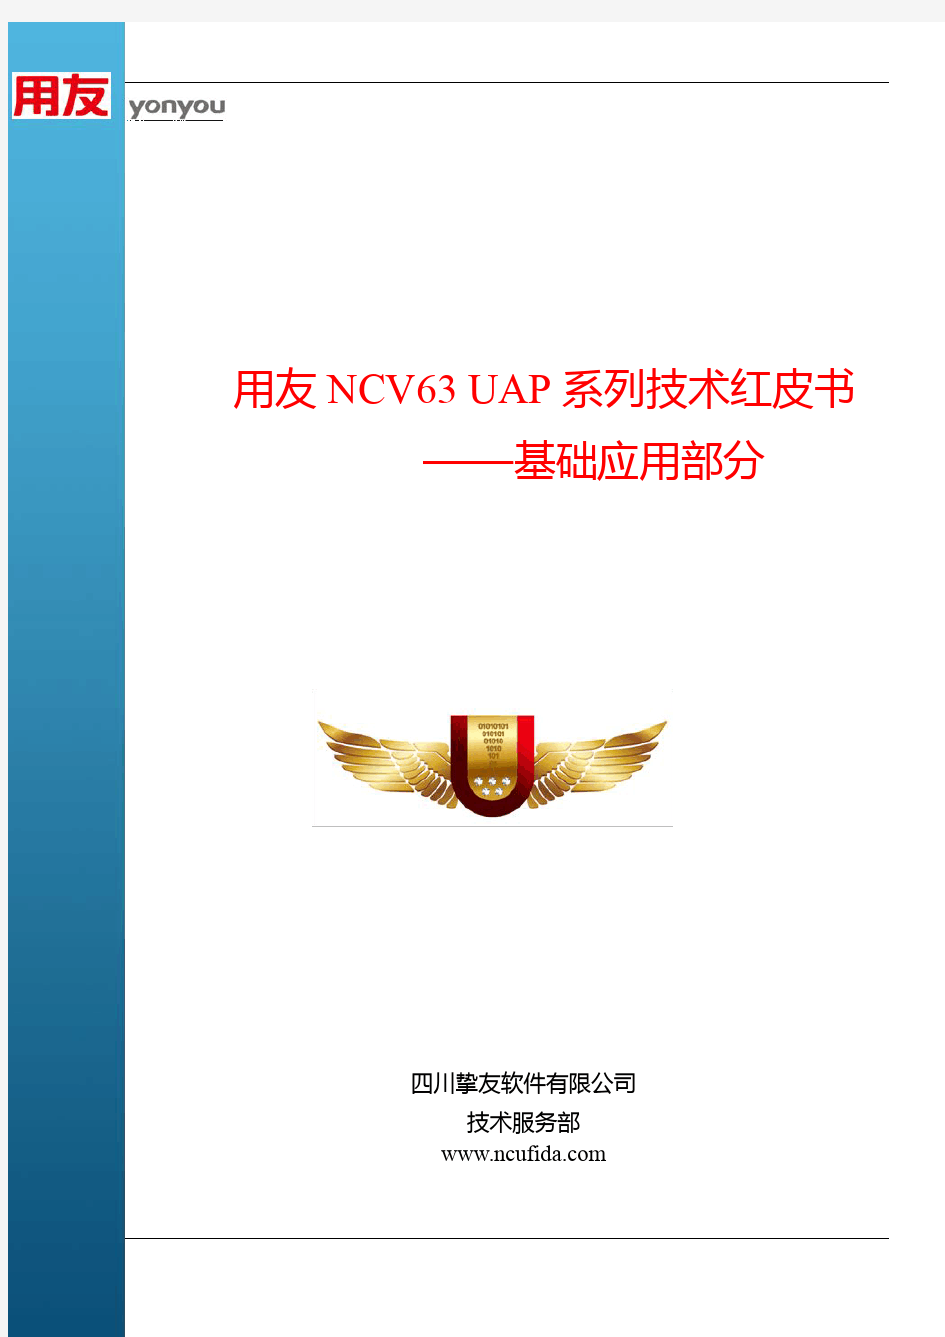 用友NC V63 UAP系列技术红皮书——基础应用